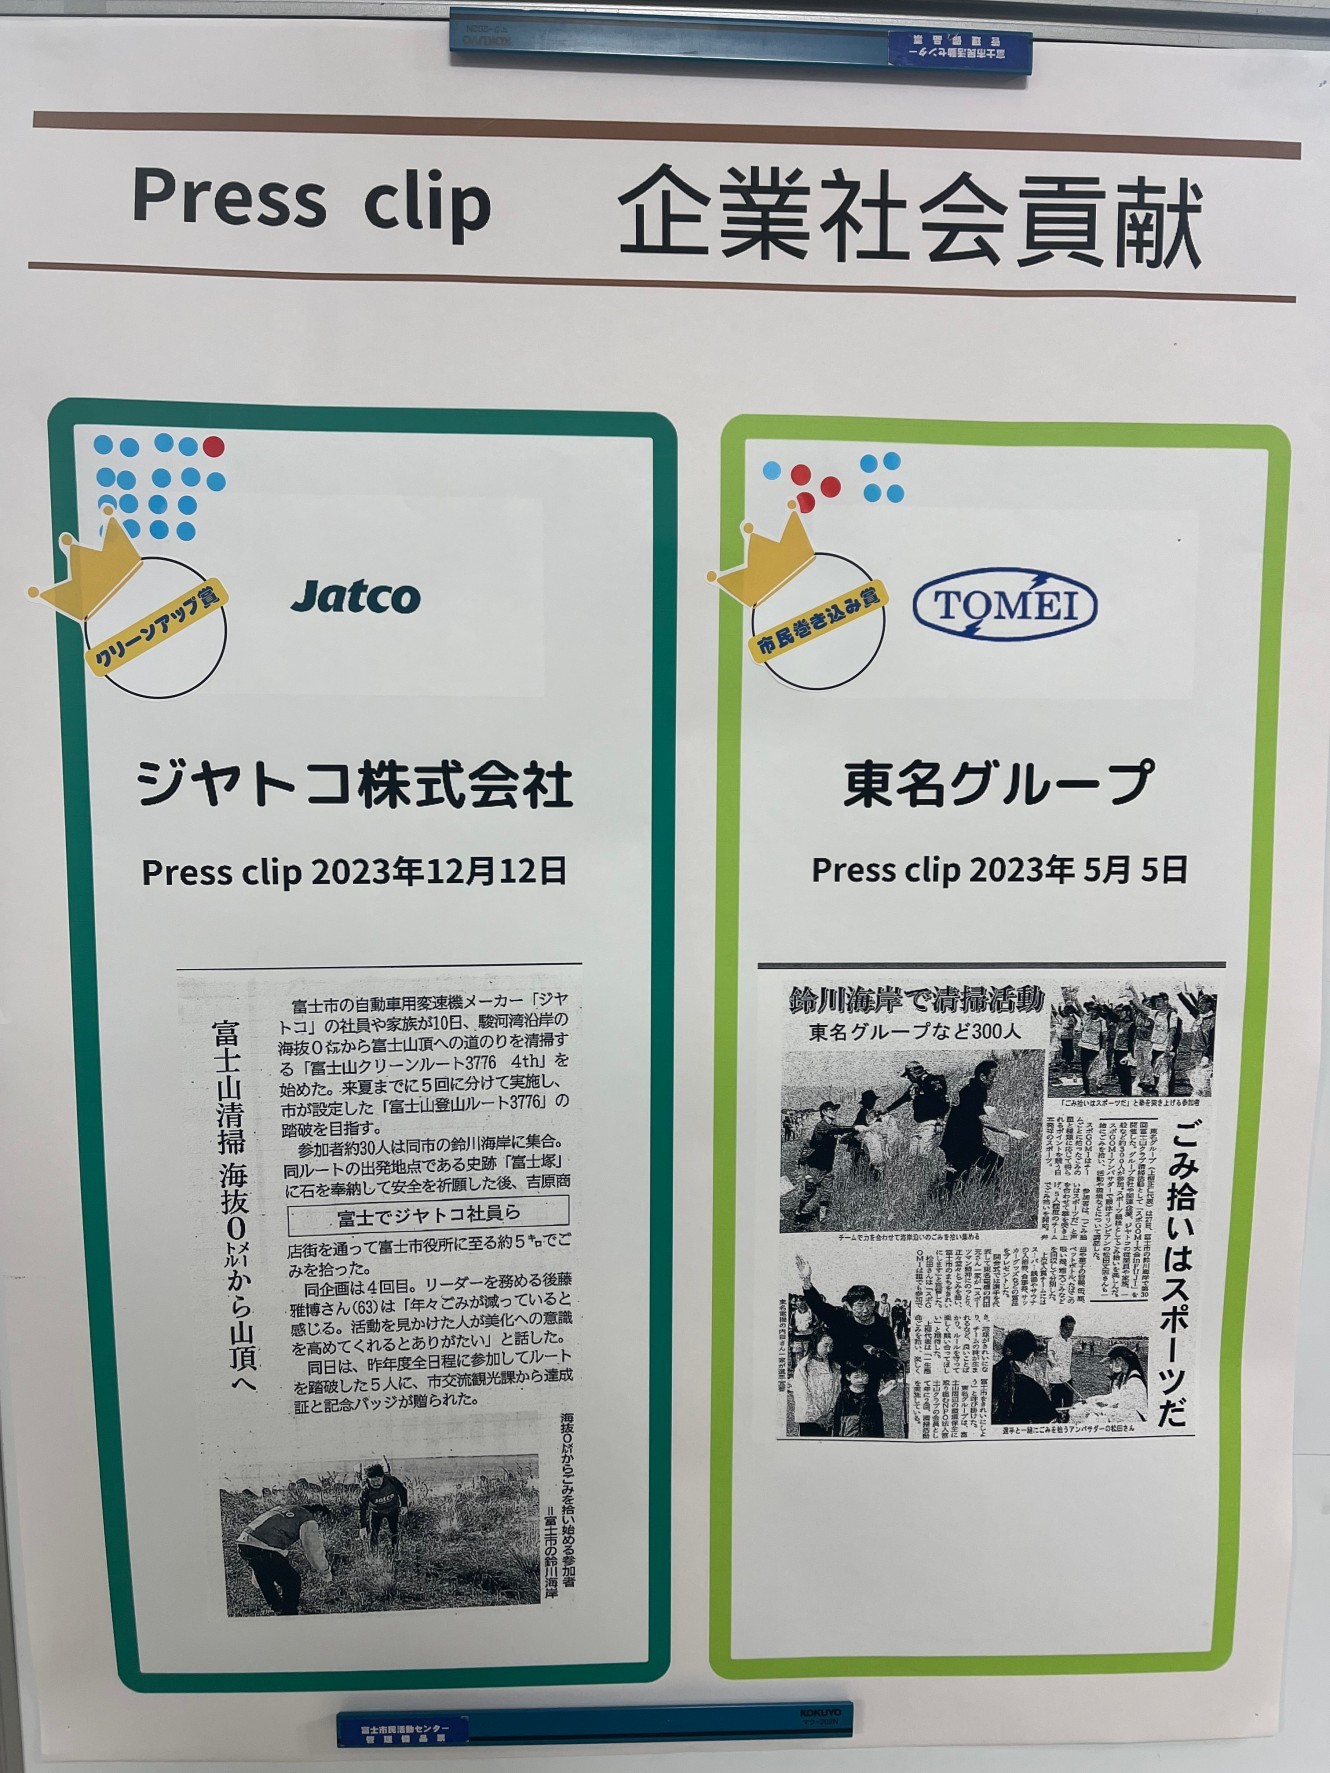 ☆市民活動アワード2023にて東名グループが「市民巻き込み賞」を受賞しました☆